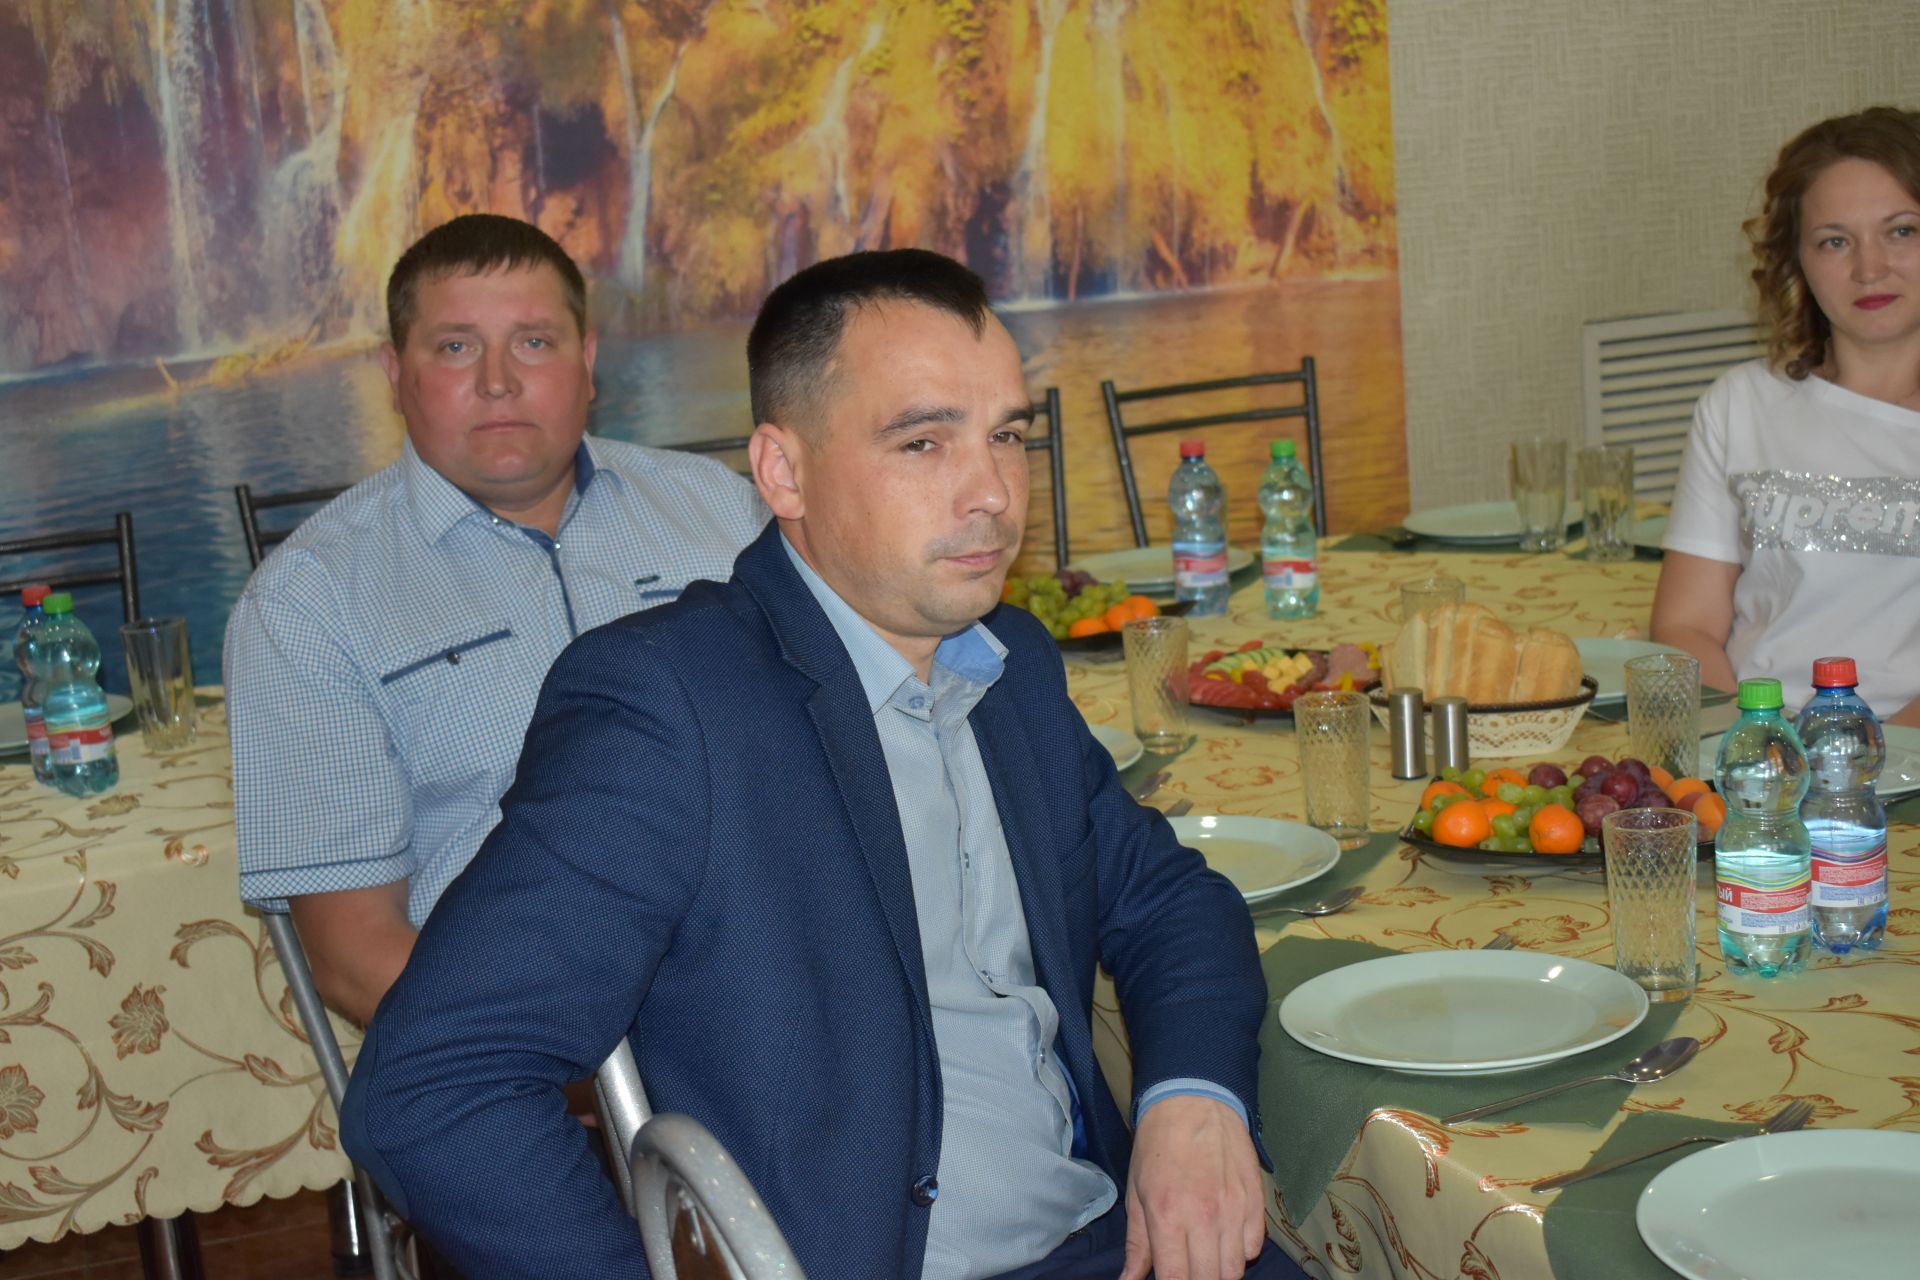 Аксубаевские предприниматели встретились за круглым столом с руководством района